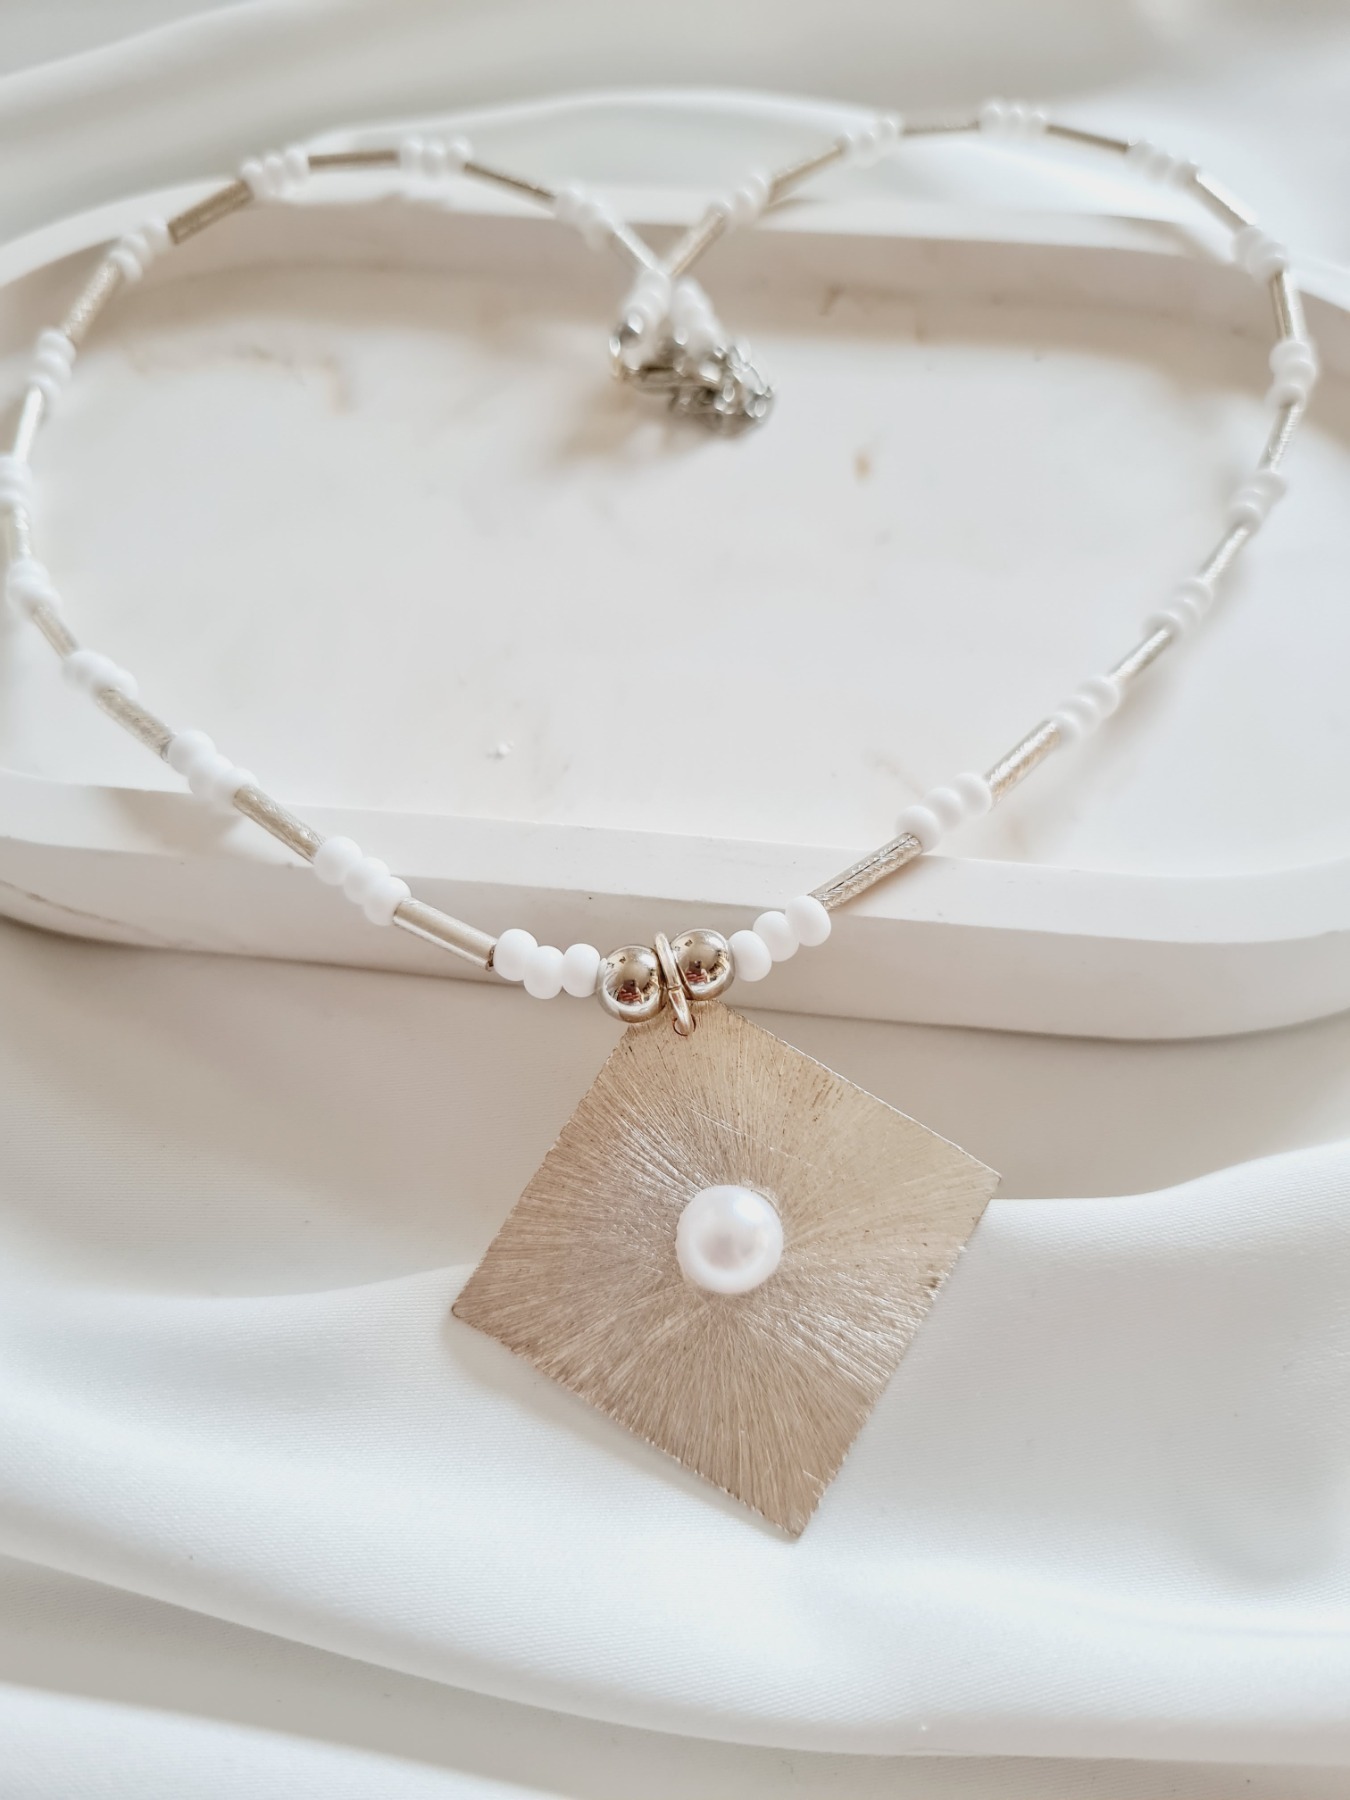 Halskette aus Rocailles Perlen in weiß mit Metall-Anhänger